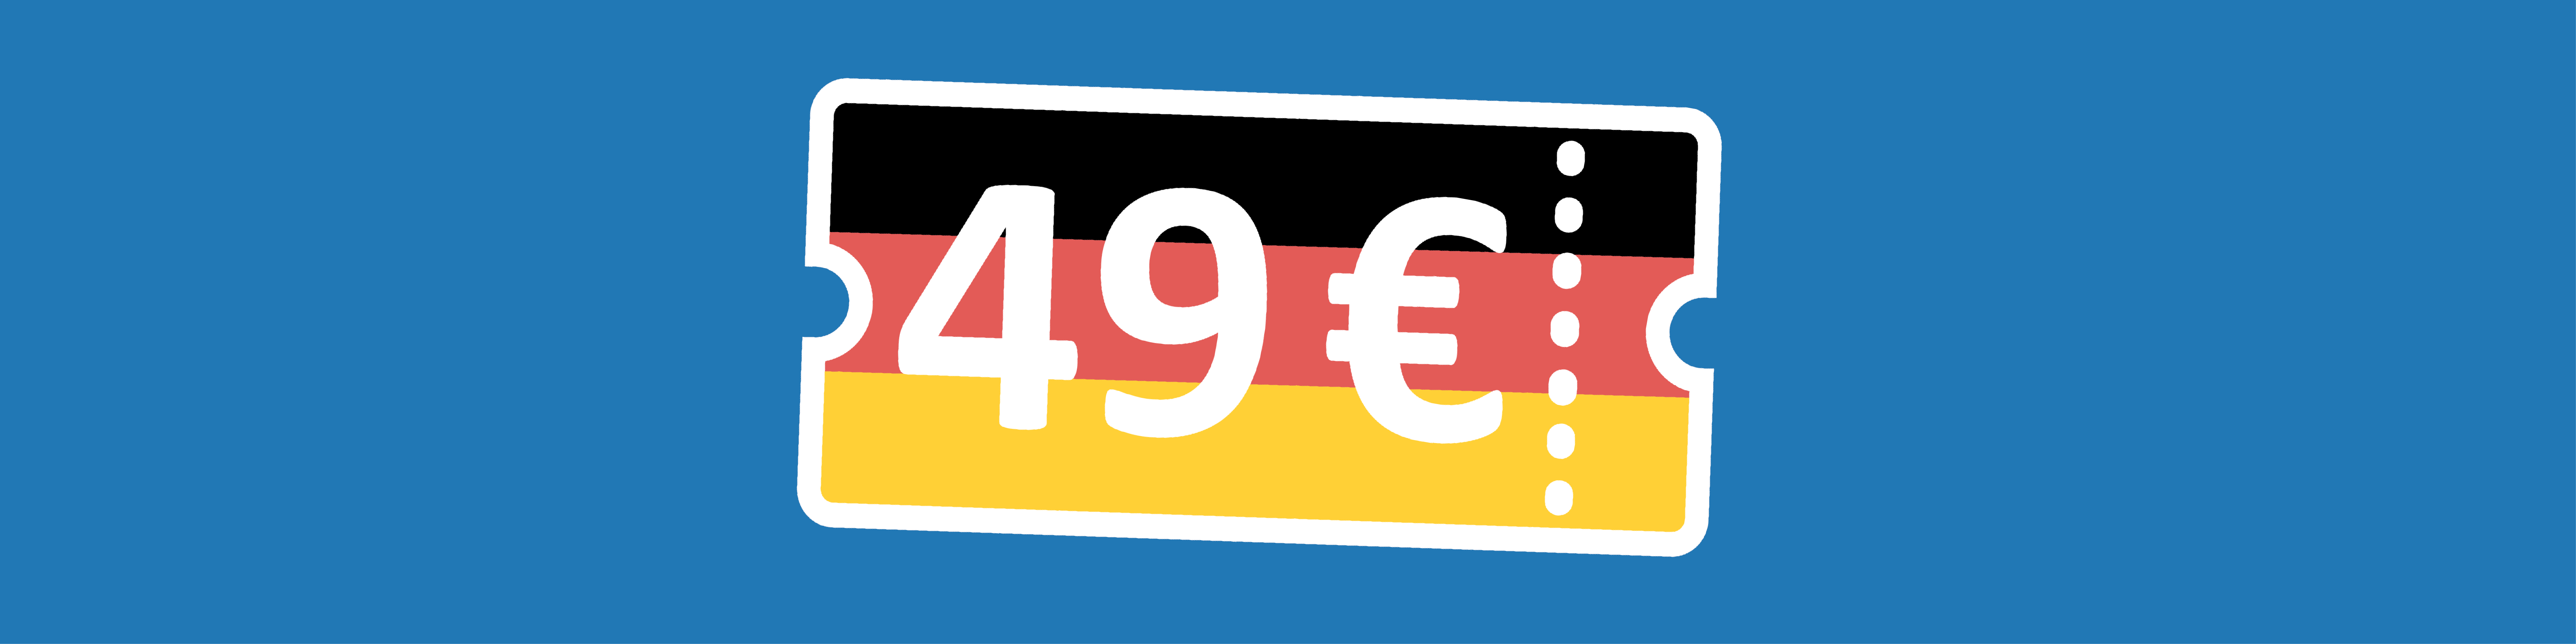 49 Euro Ticket auf blauem Hintergrund